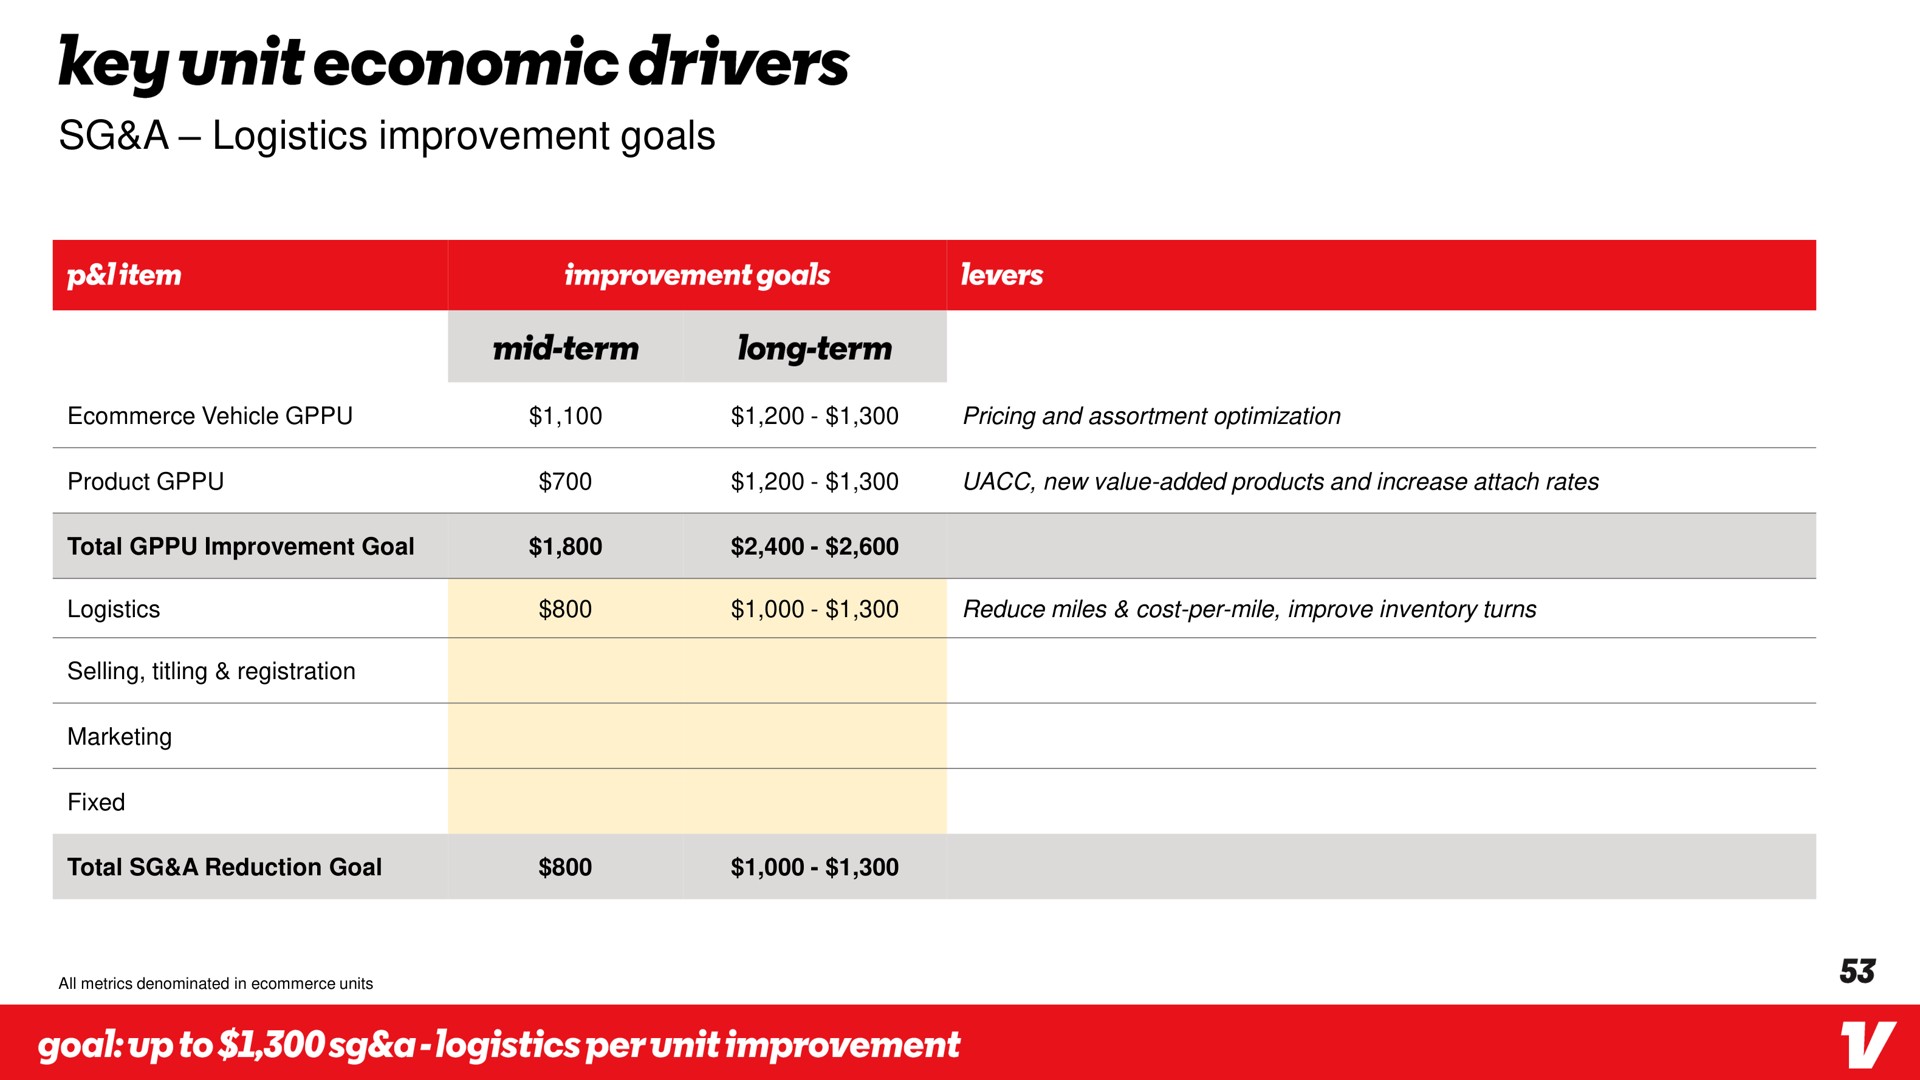 a logistics improvement goals key unit economic drivers | Vroom